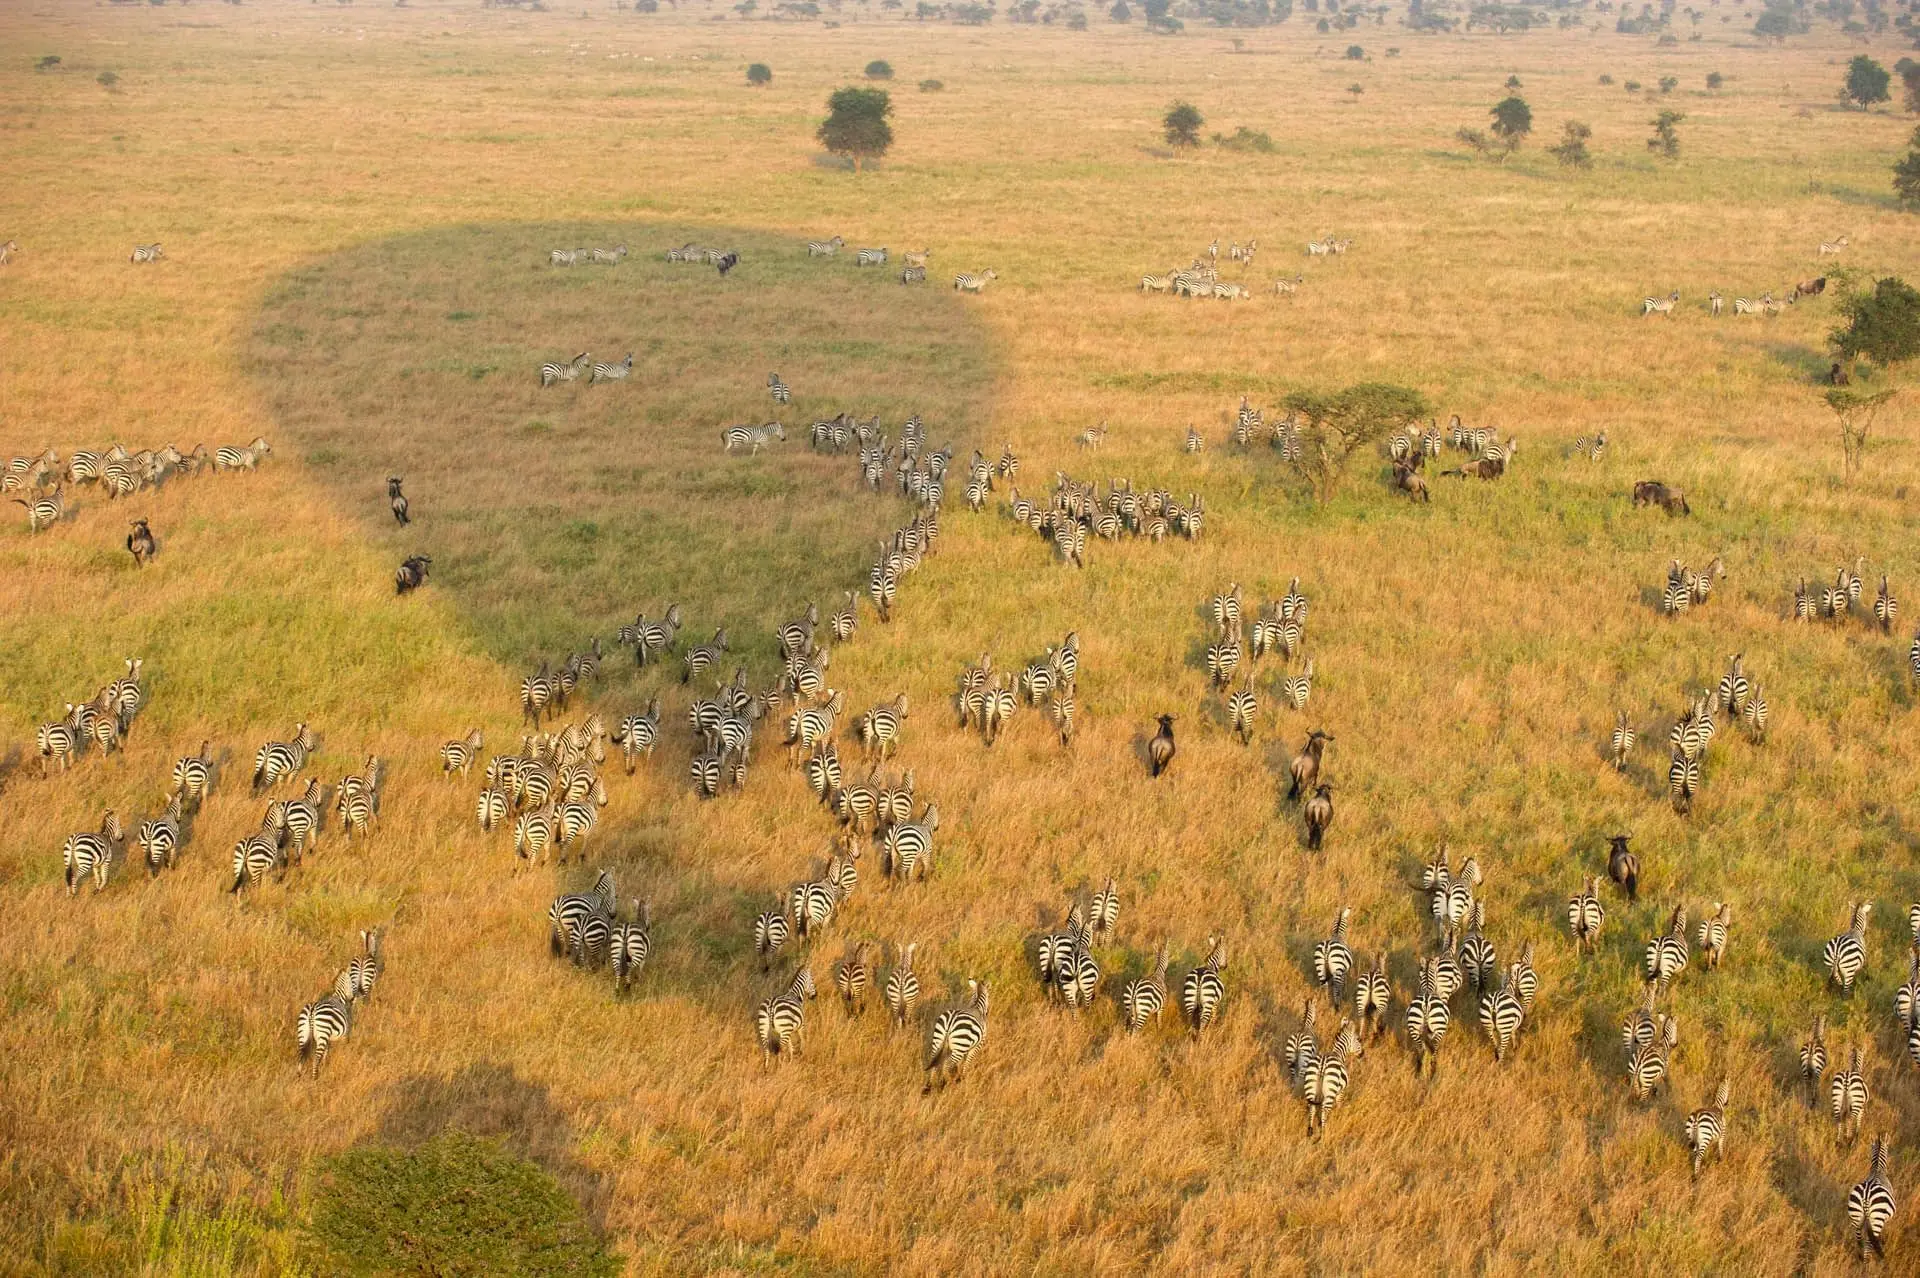 Safari holidays to Serengeti - Aerial view of the Serengeti from a hot air balloon safari